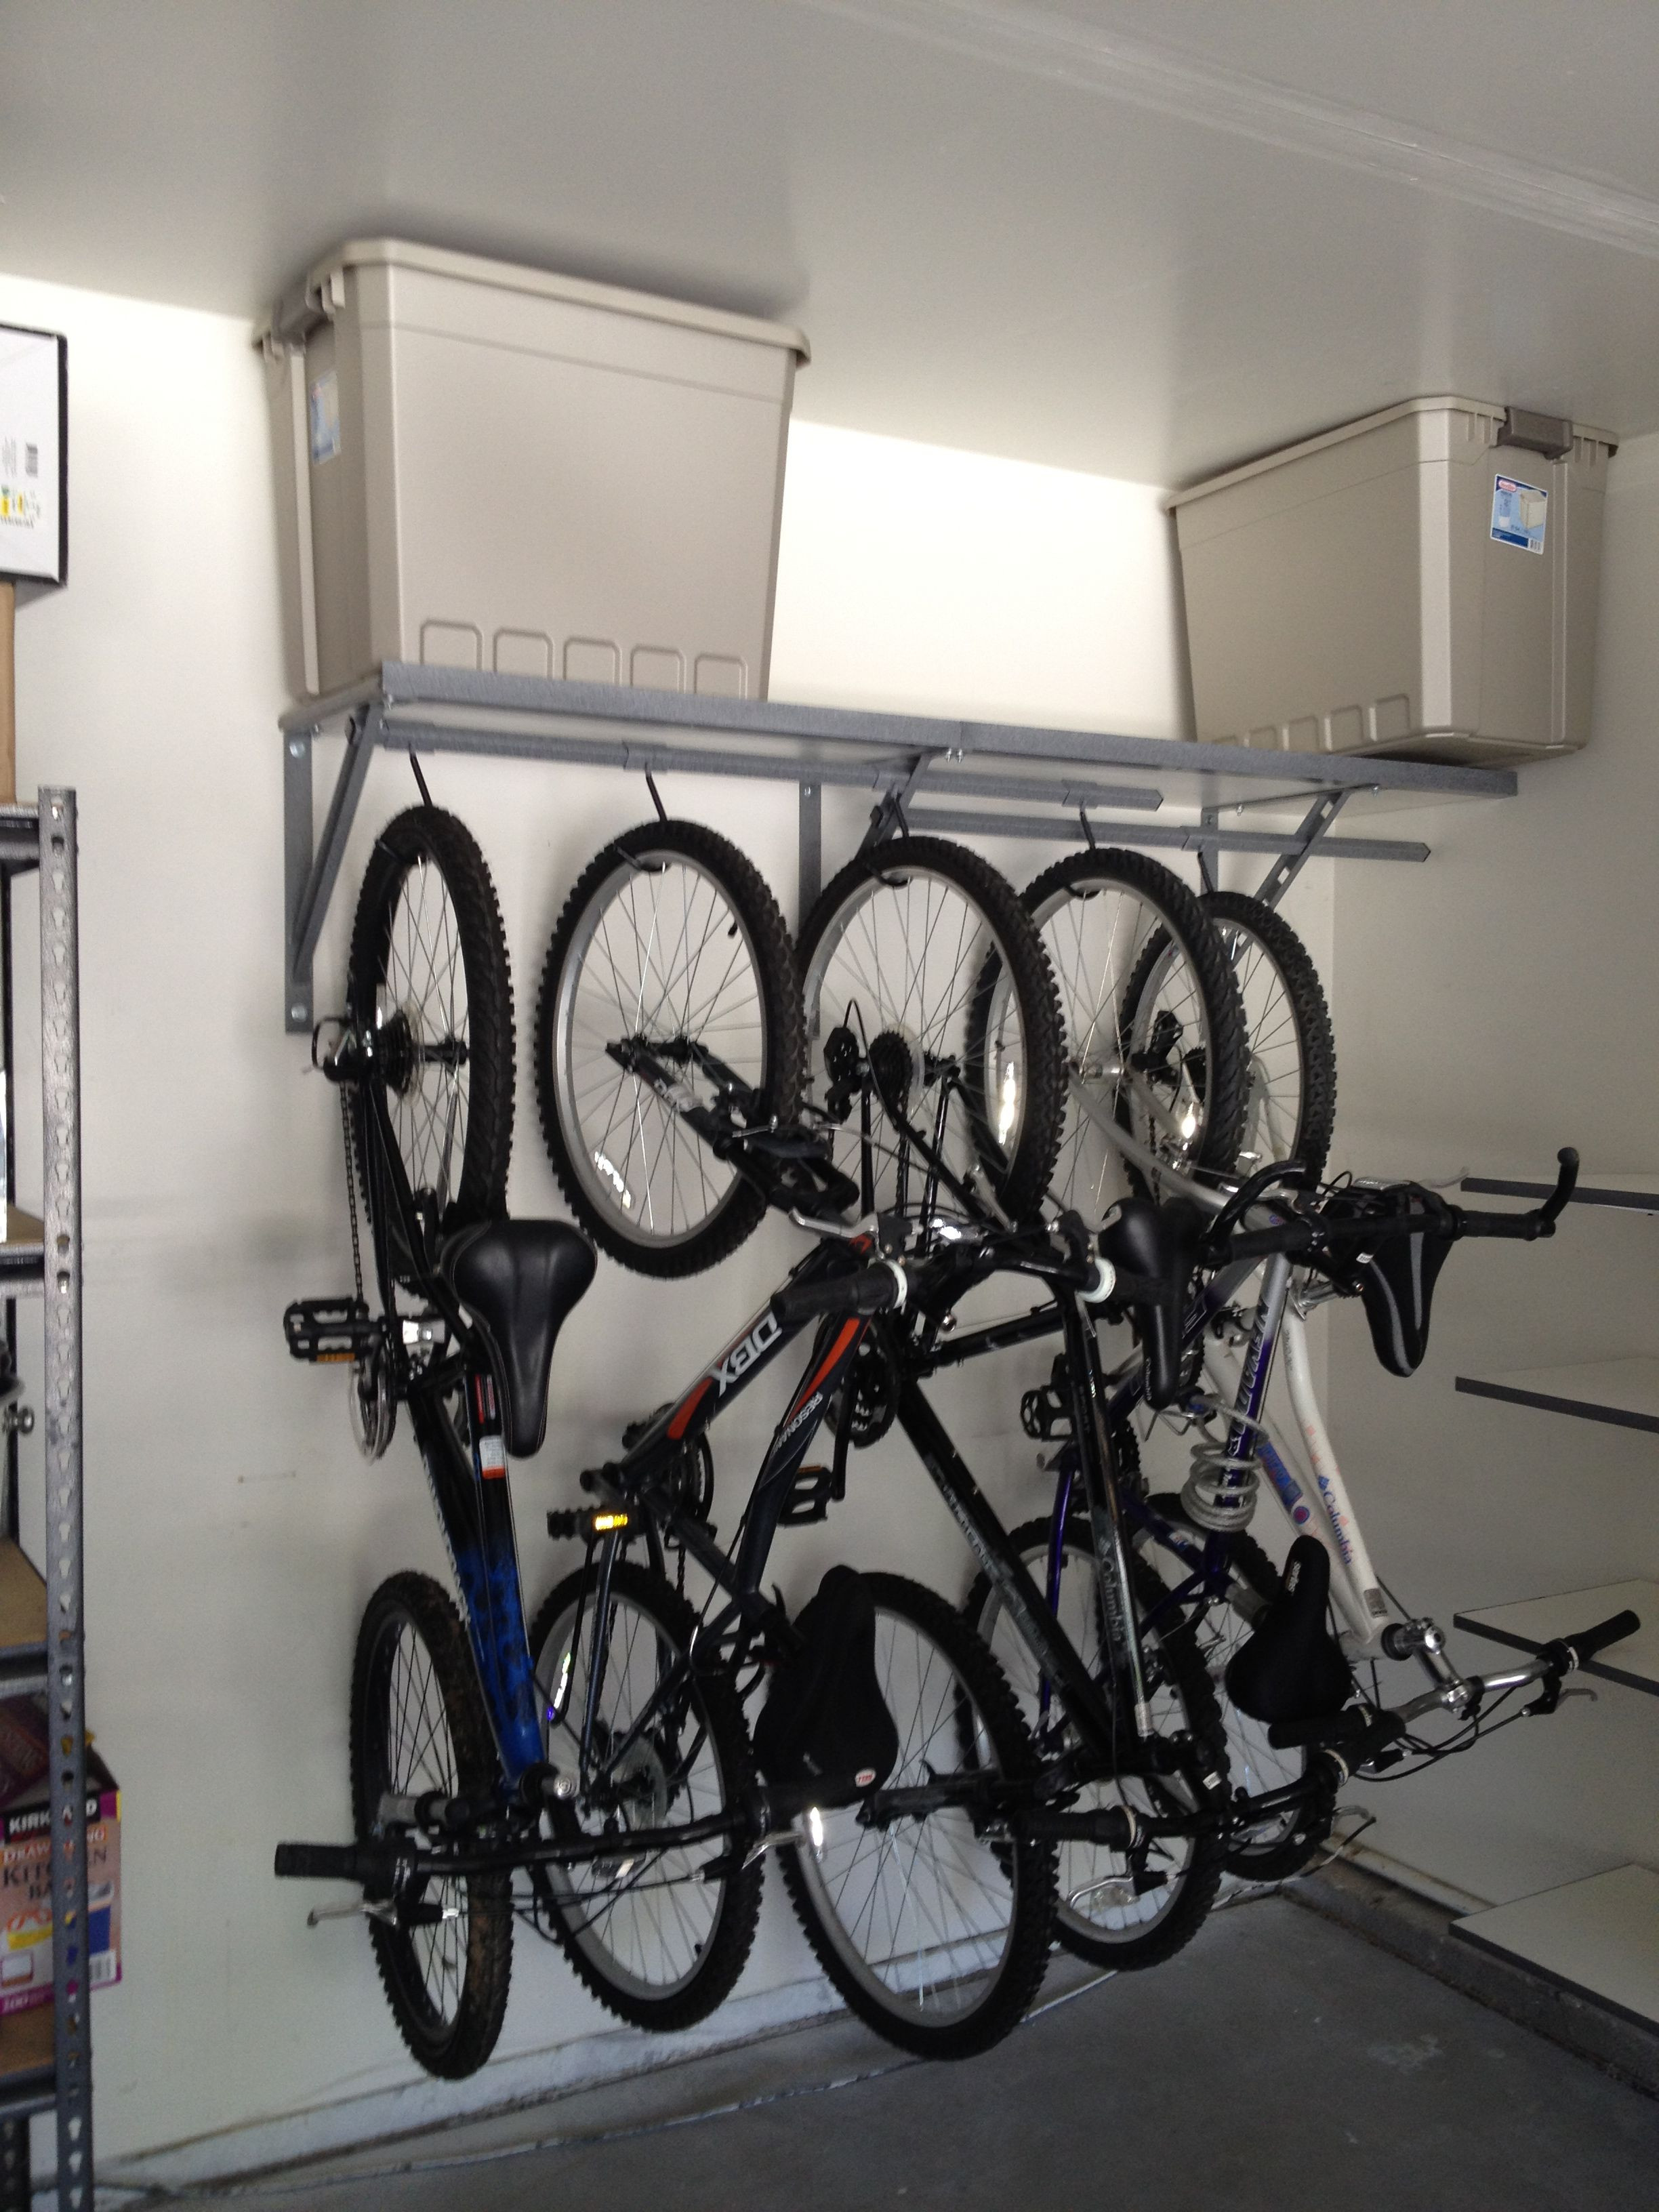 Best ideas about Bike Rack Garage Storage
. Save or Pin garage bike storage Good ideas for the home Now.